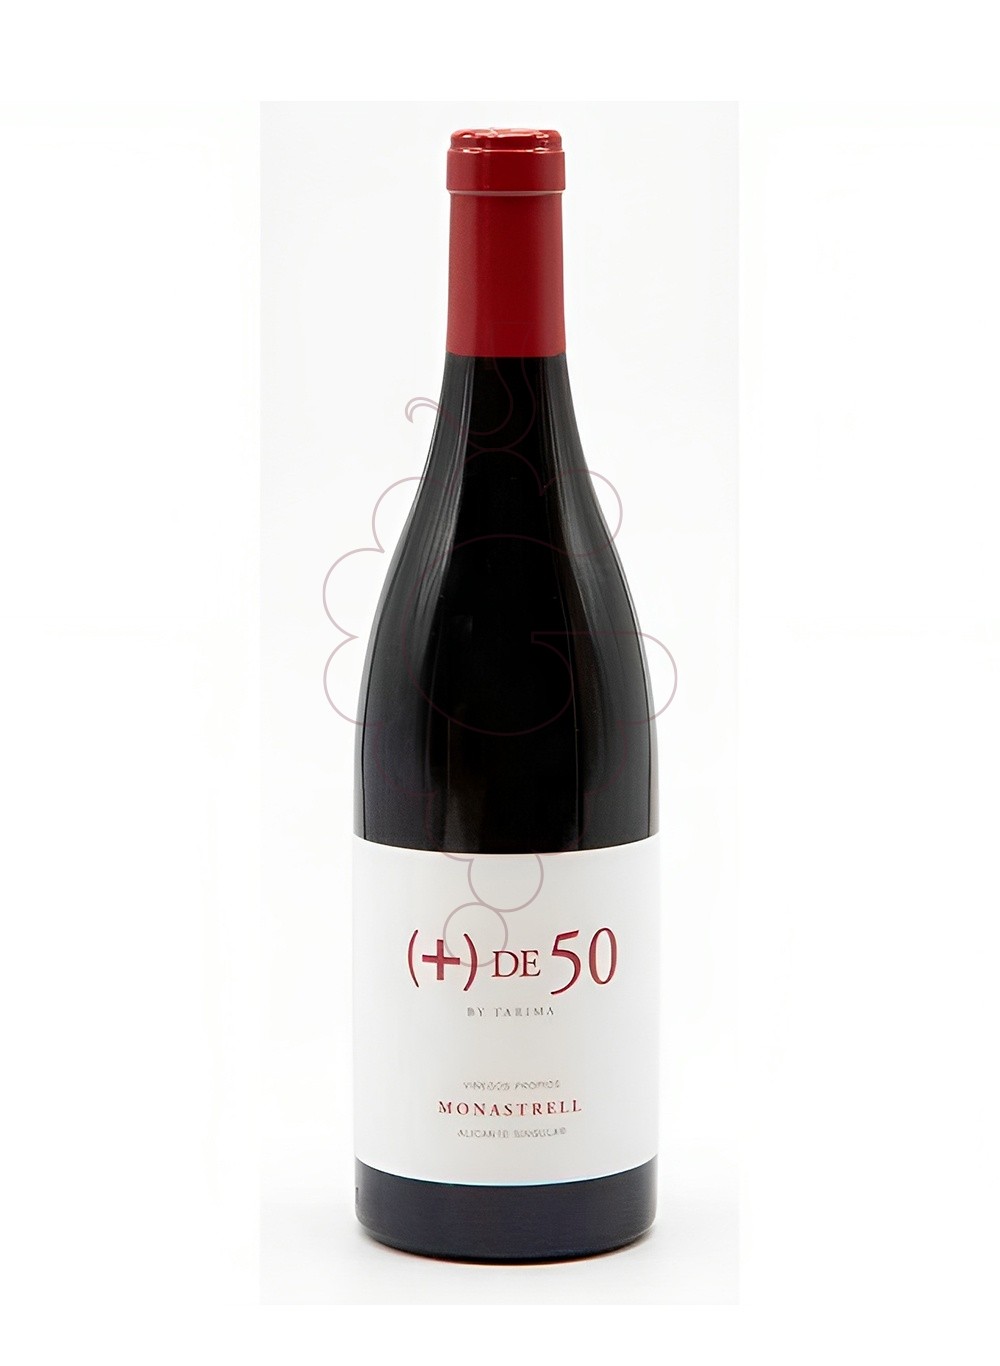 Photo + de 50 monastrell 75 cl vin rouge